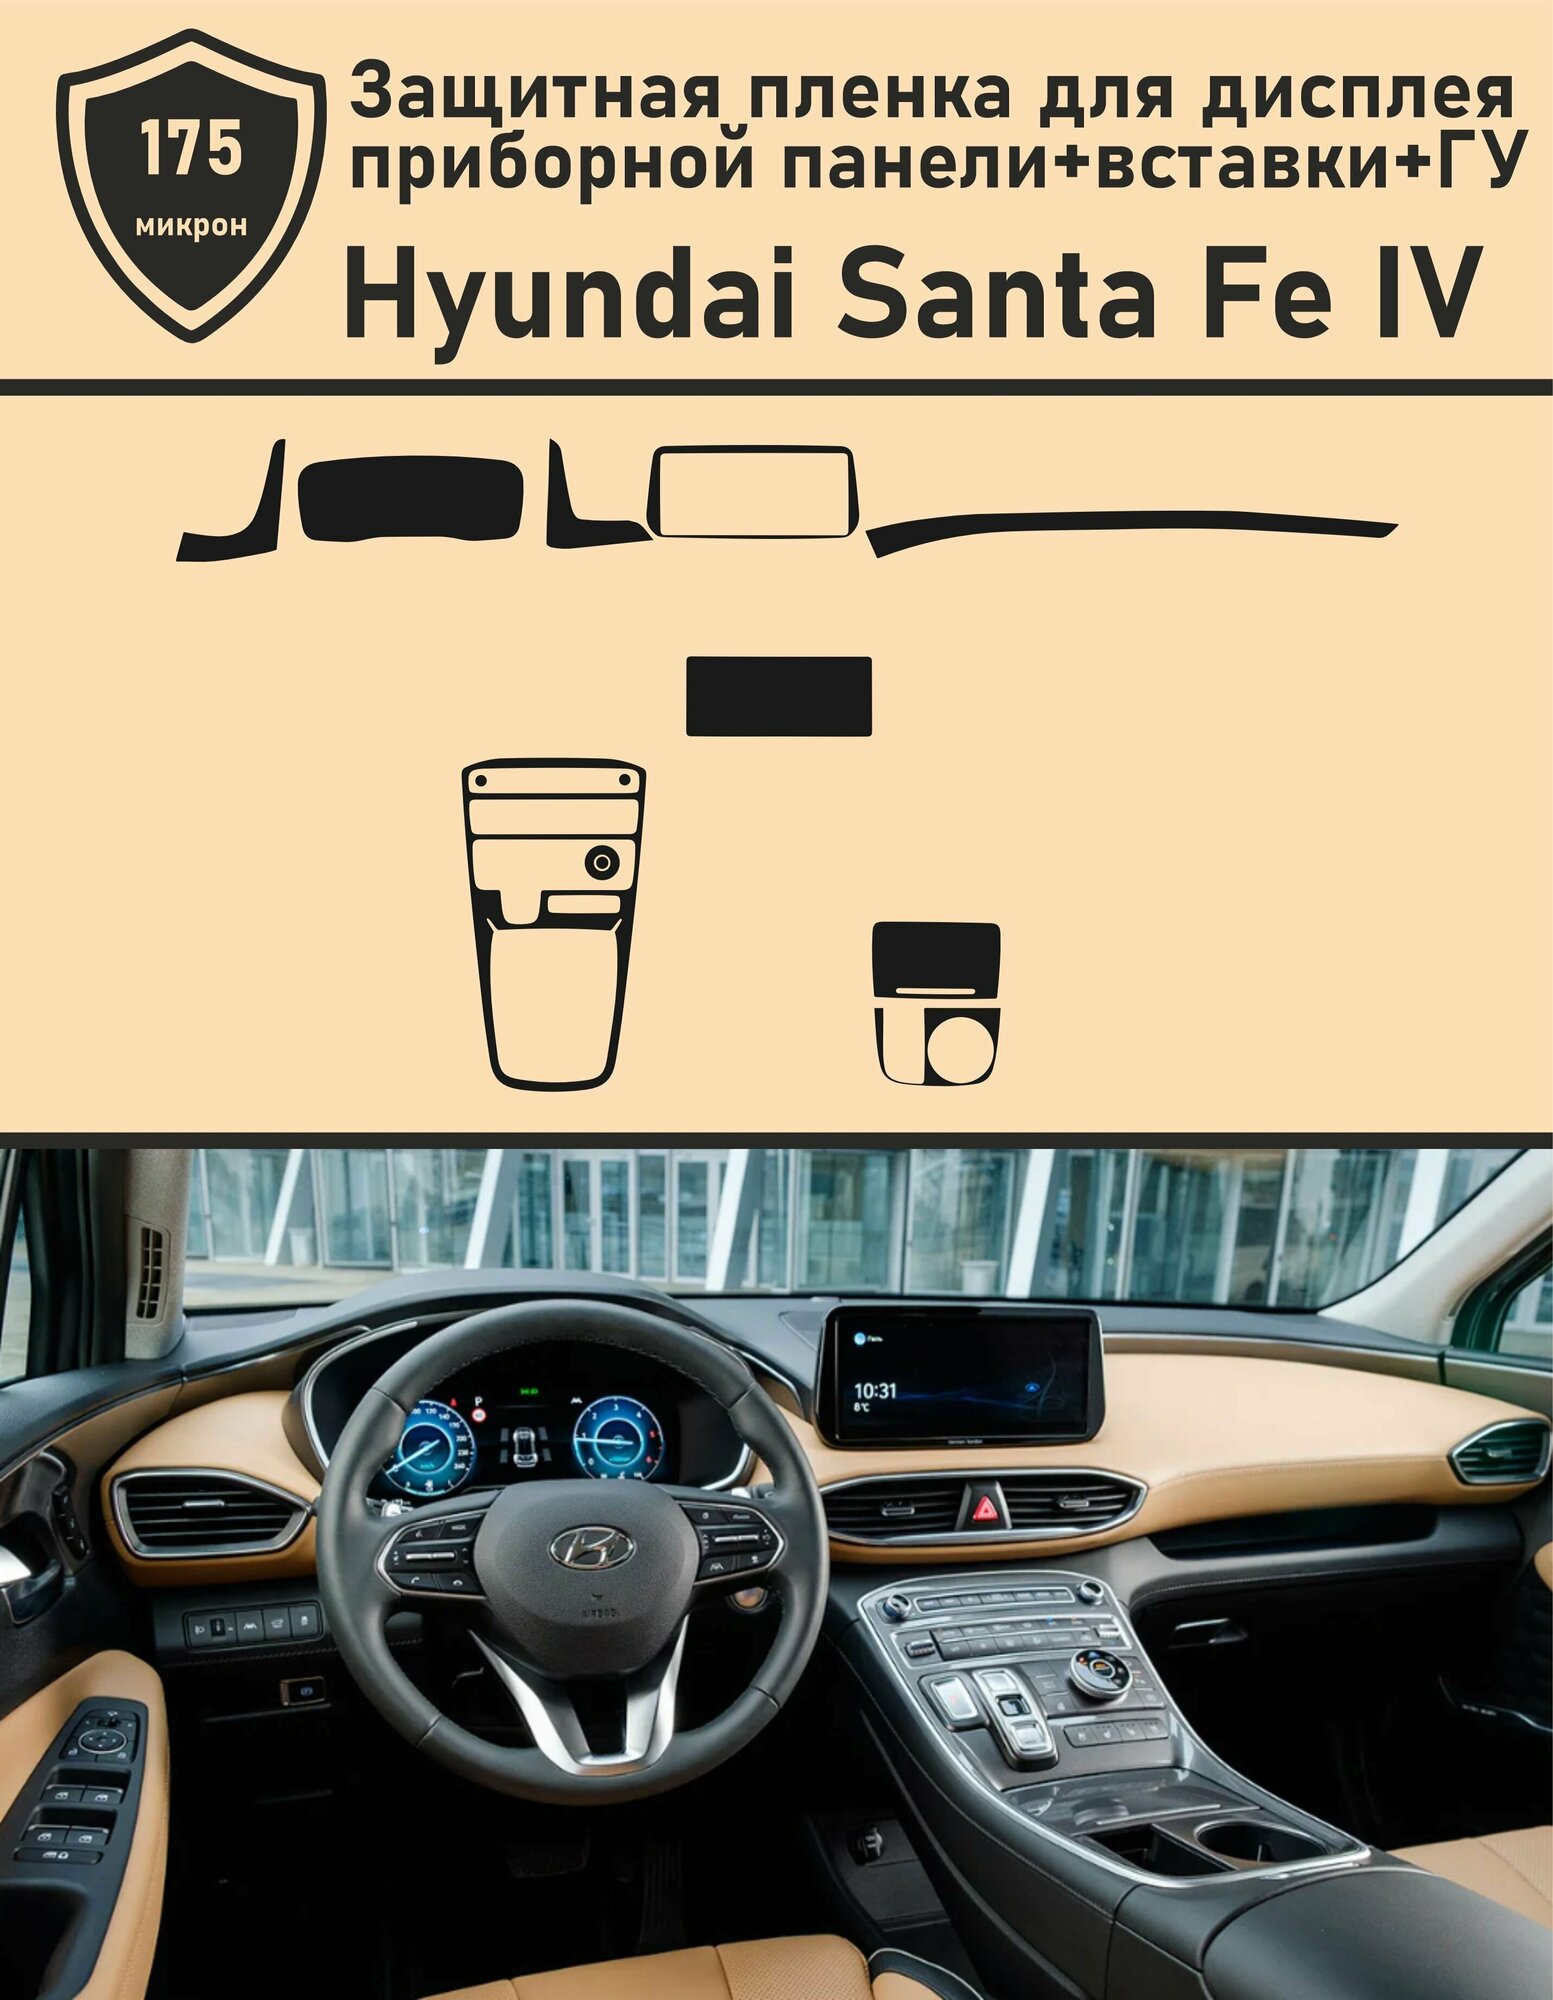 Hyundai Santa Fe IV рестайлинг/Защитная пленка для дисплея приборной панели+вставки+ГУ